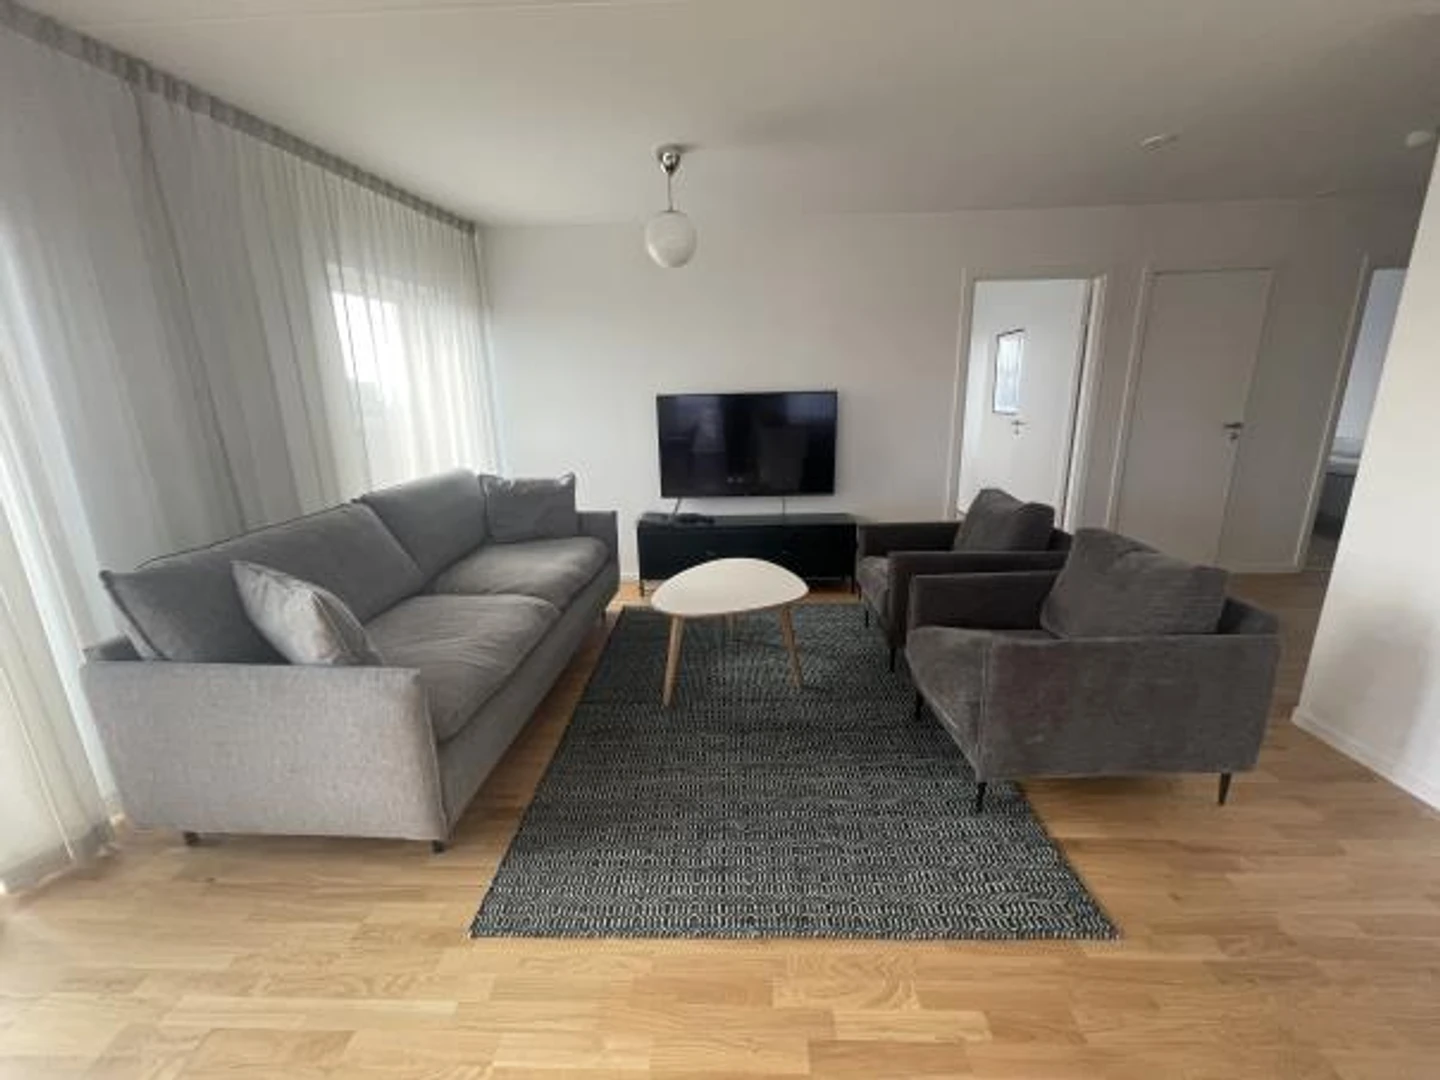 W pełni umeblowane mieszkanie w Malmö